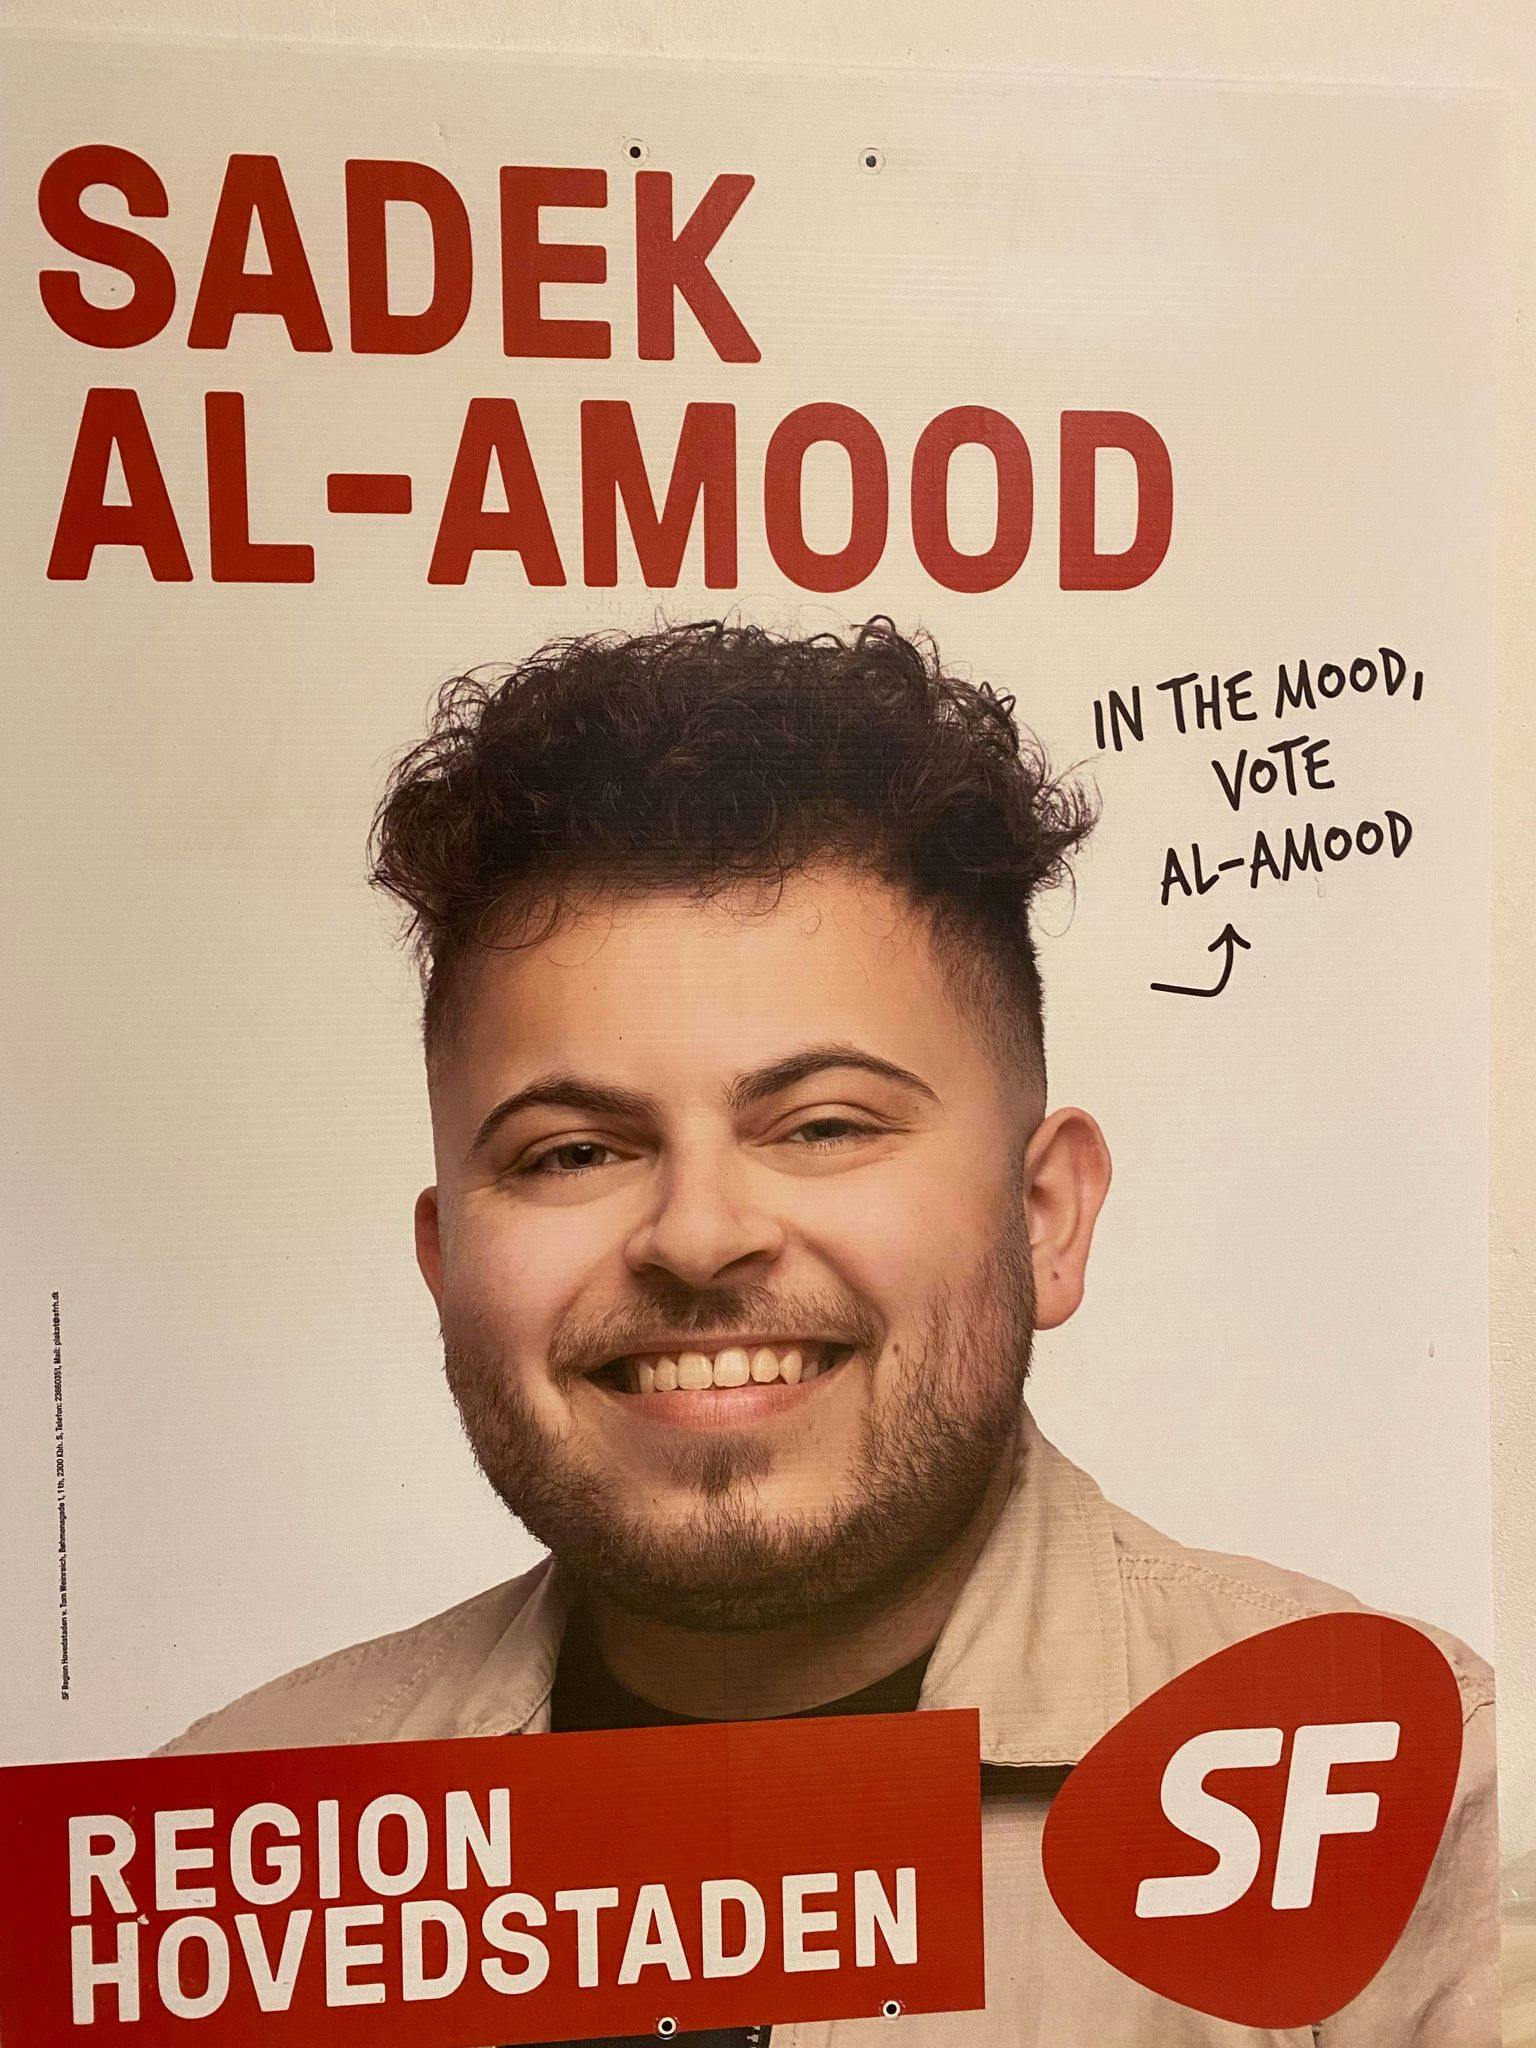 Sadek Al-Amood